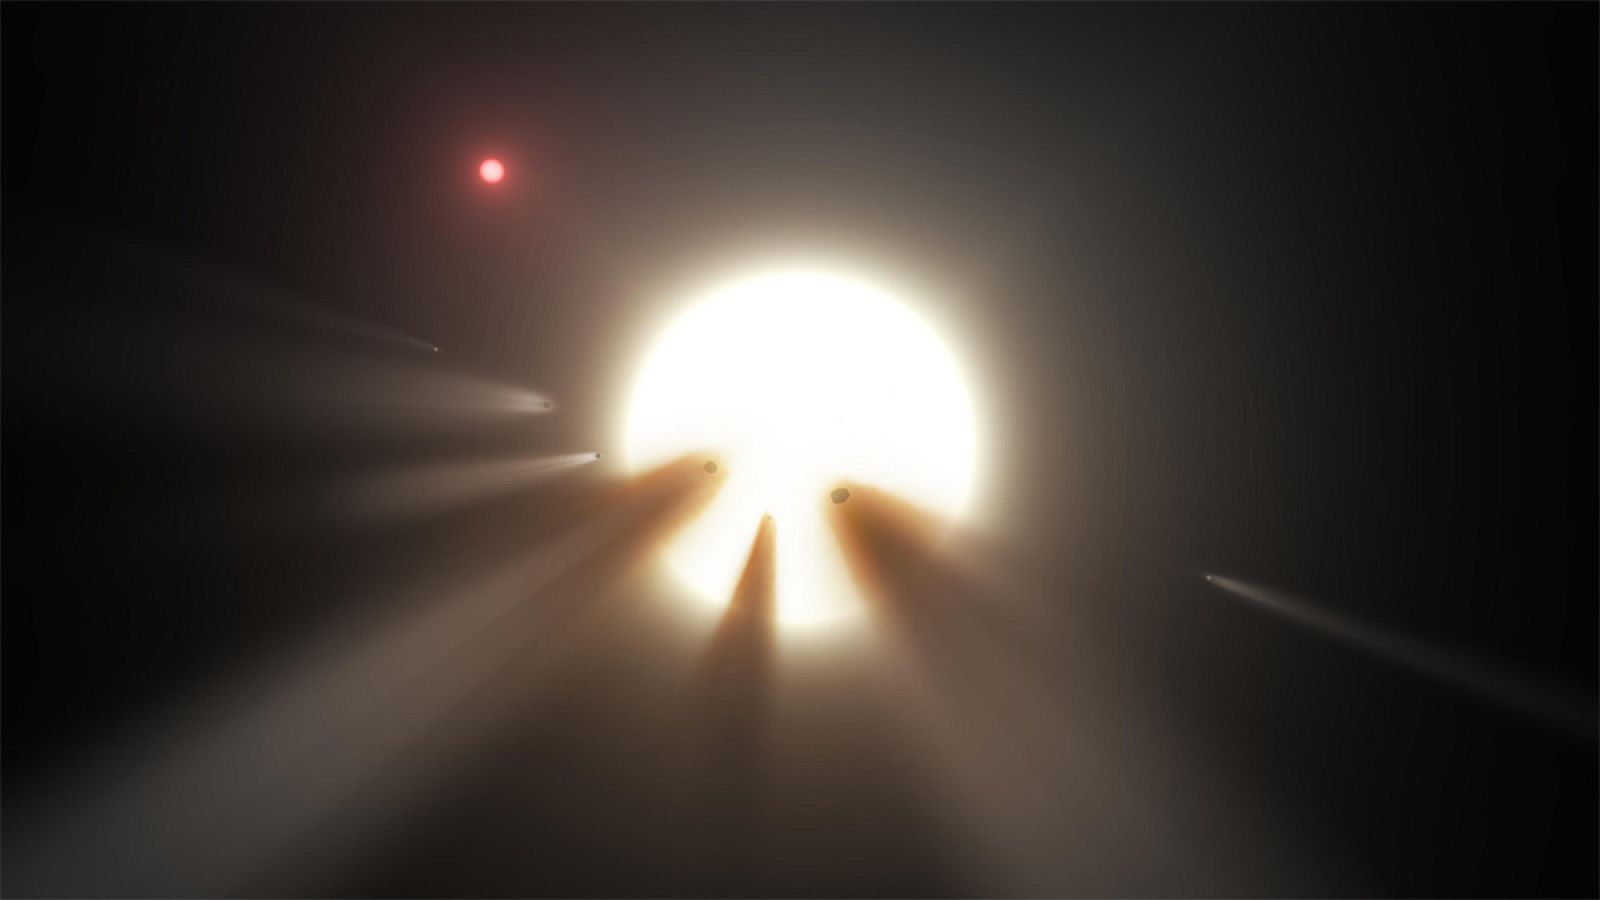 Representación artística de cómo cometas pueden interferir en la luz de una estrella.